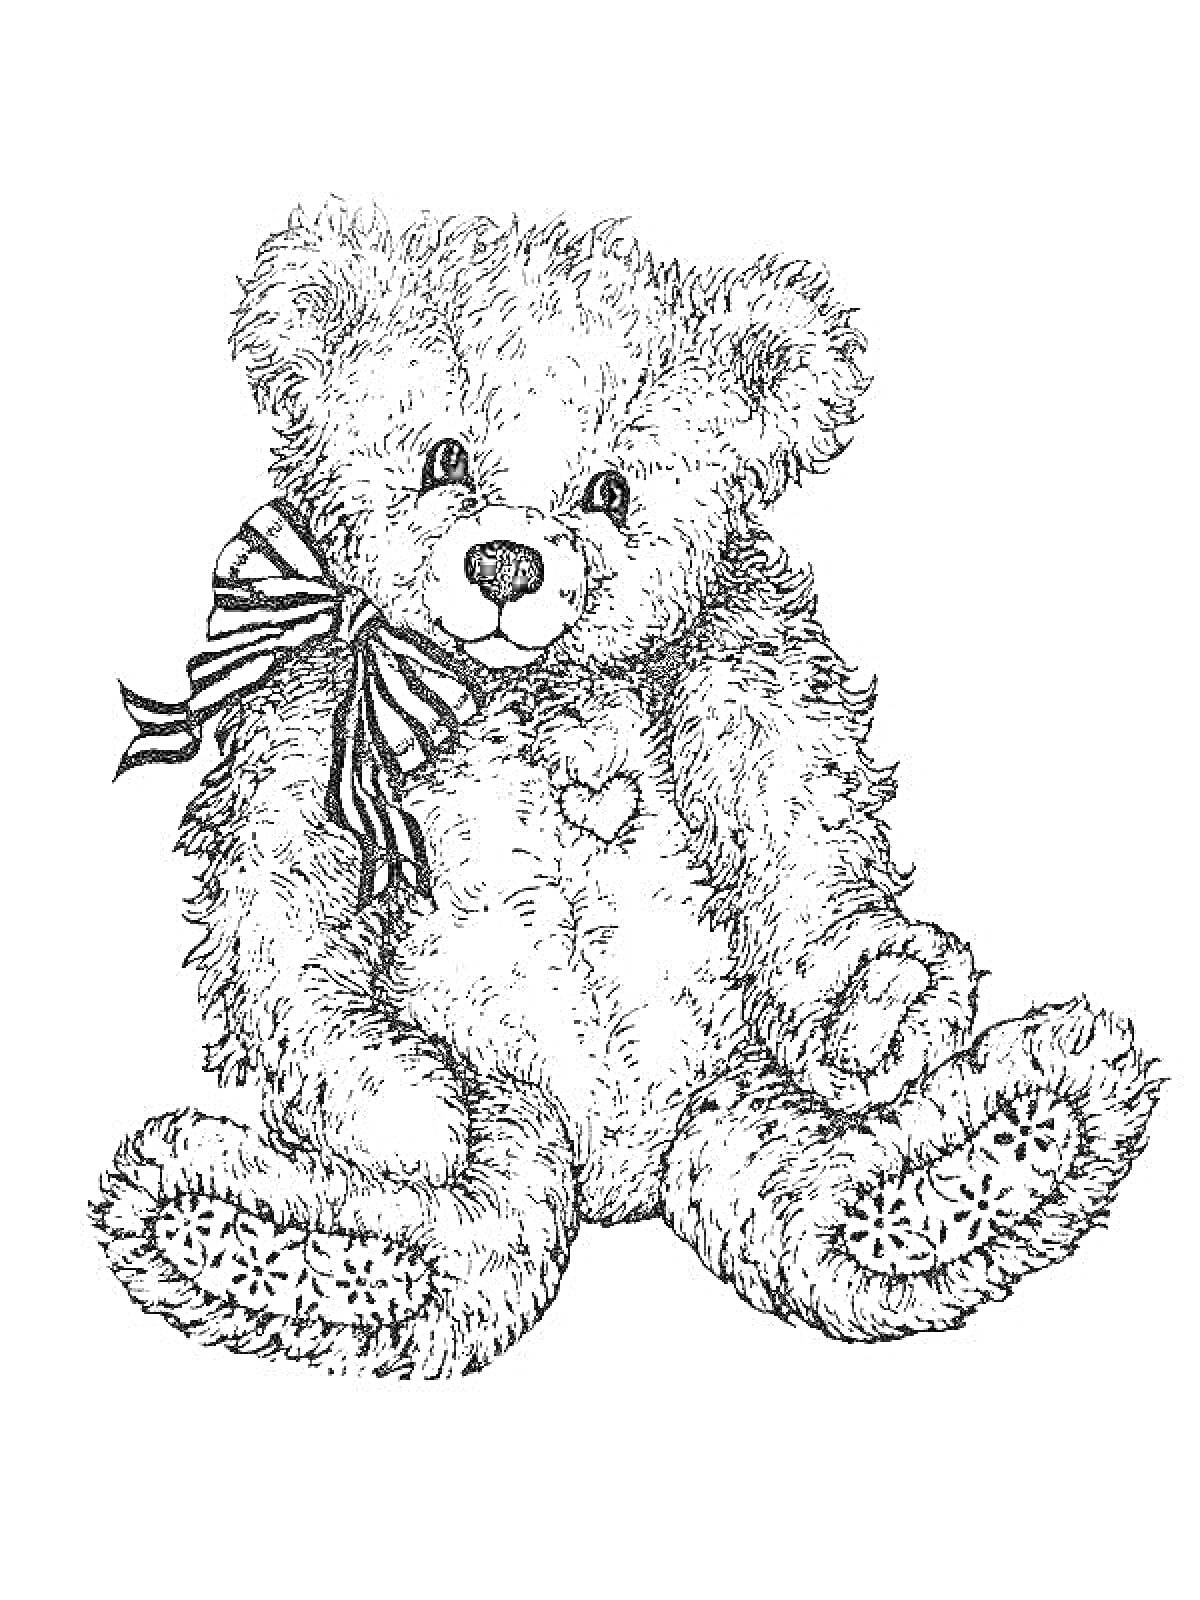 Раскраска Мишка Тедди с полосатым бантом и сердечным патчем на груди, сидящий